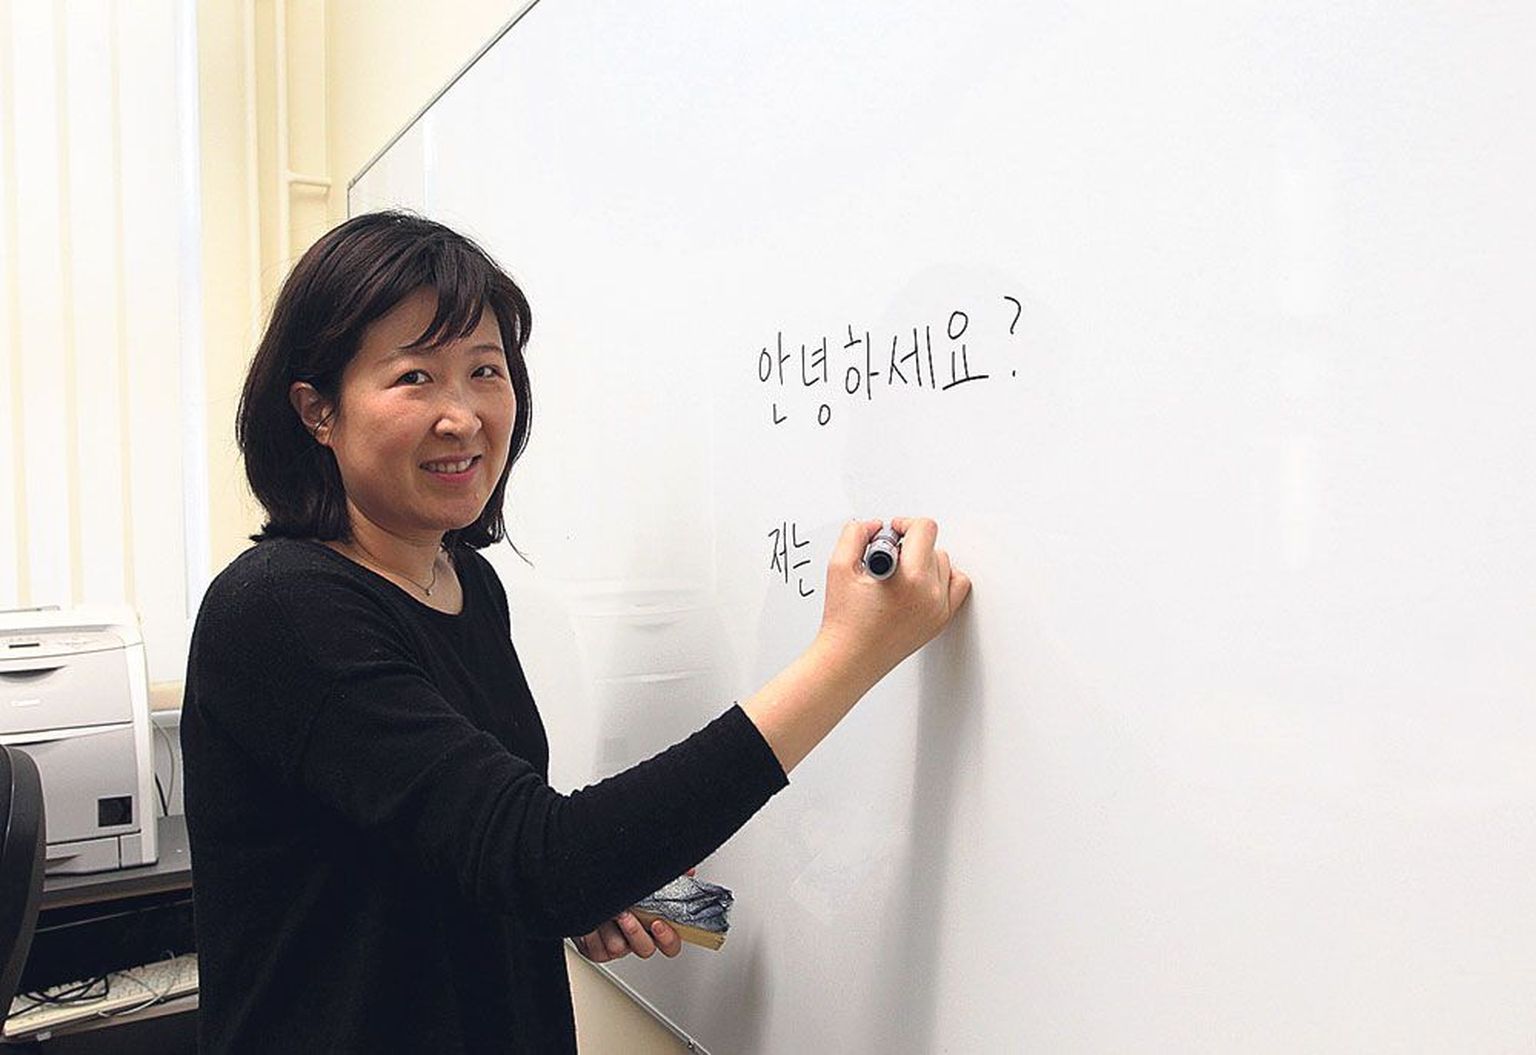 Hyunjung Shin kirjutab tahvlile koreakeelse tervituse ja selle alla «meeldiv tutvuda». Need on esimesed fraasid, mis ta oma tudengitele Tartu ülikoolis selgeks õpetas. Nüüdseks oskavad tudengid juba korea keeles öelda, et «korea keel on huvitav ja lihtne», ning kasutada teisi lihtsamaid väljendeid.